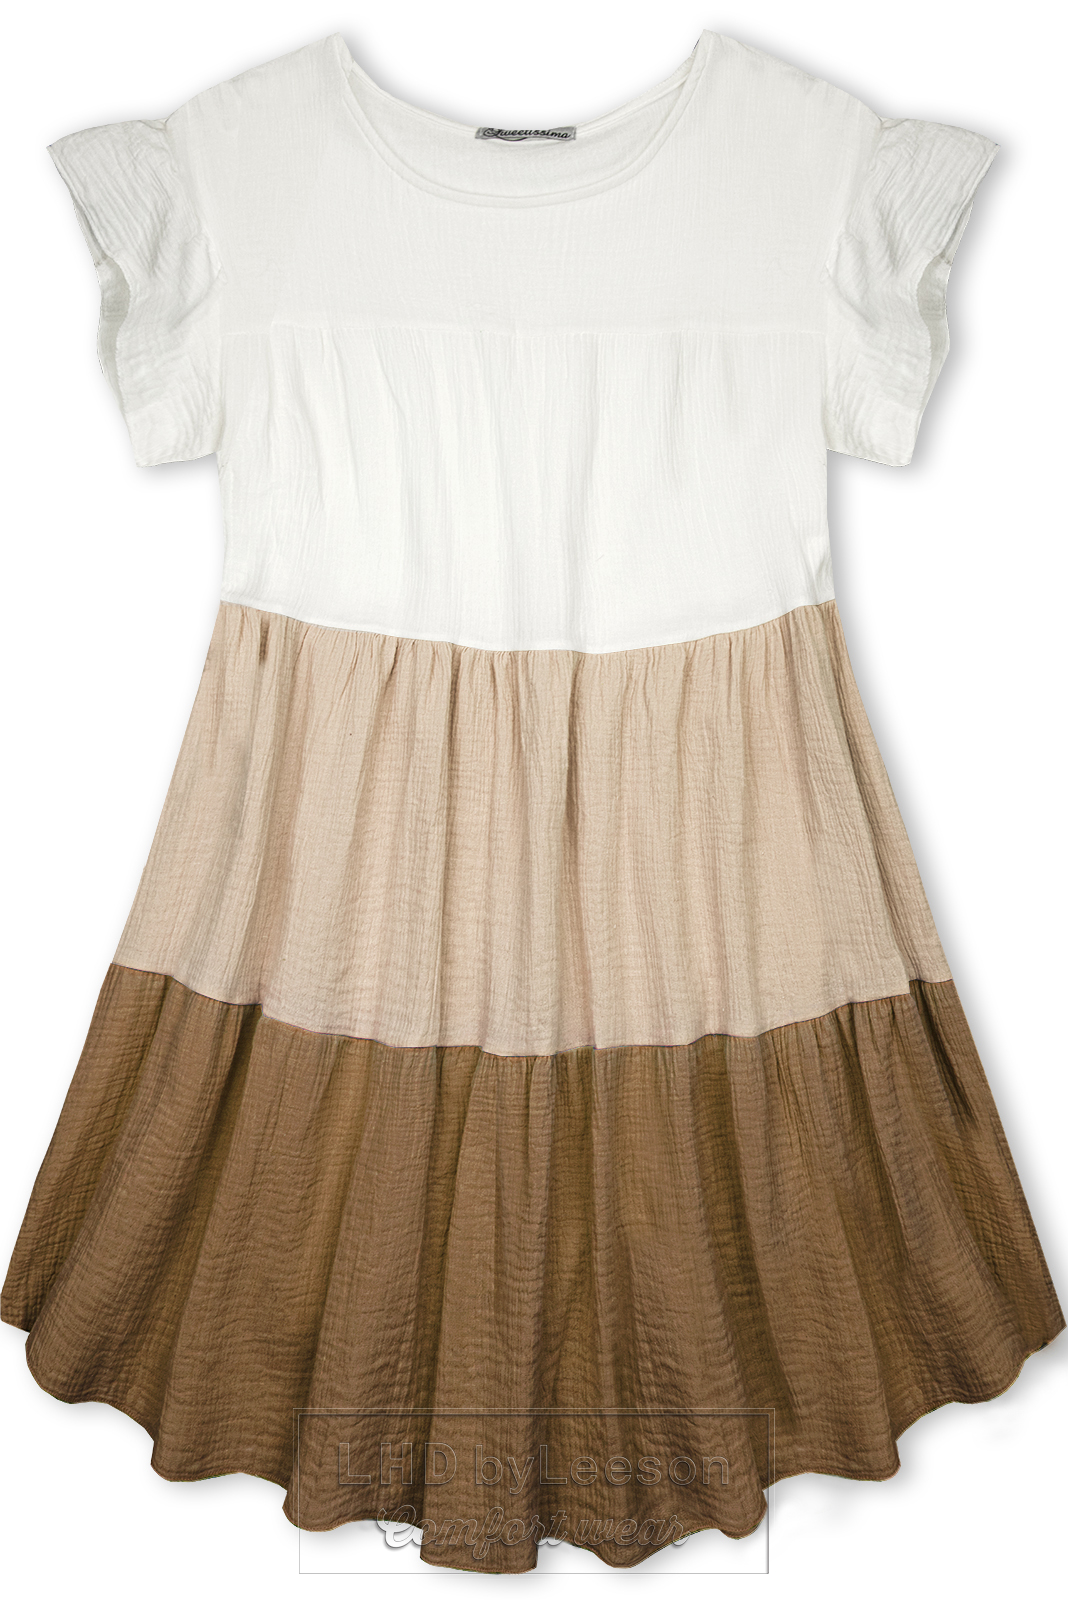 Bawełniana sukienka biała/cappuccino/brązowa